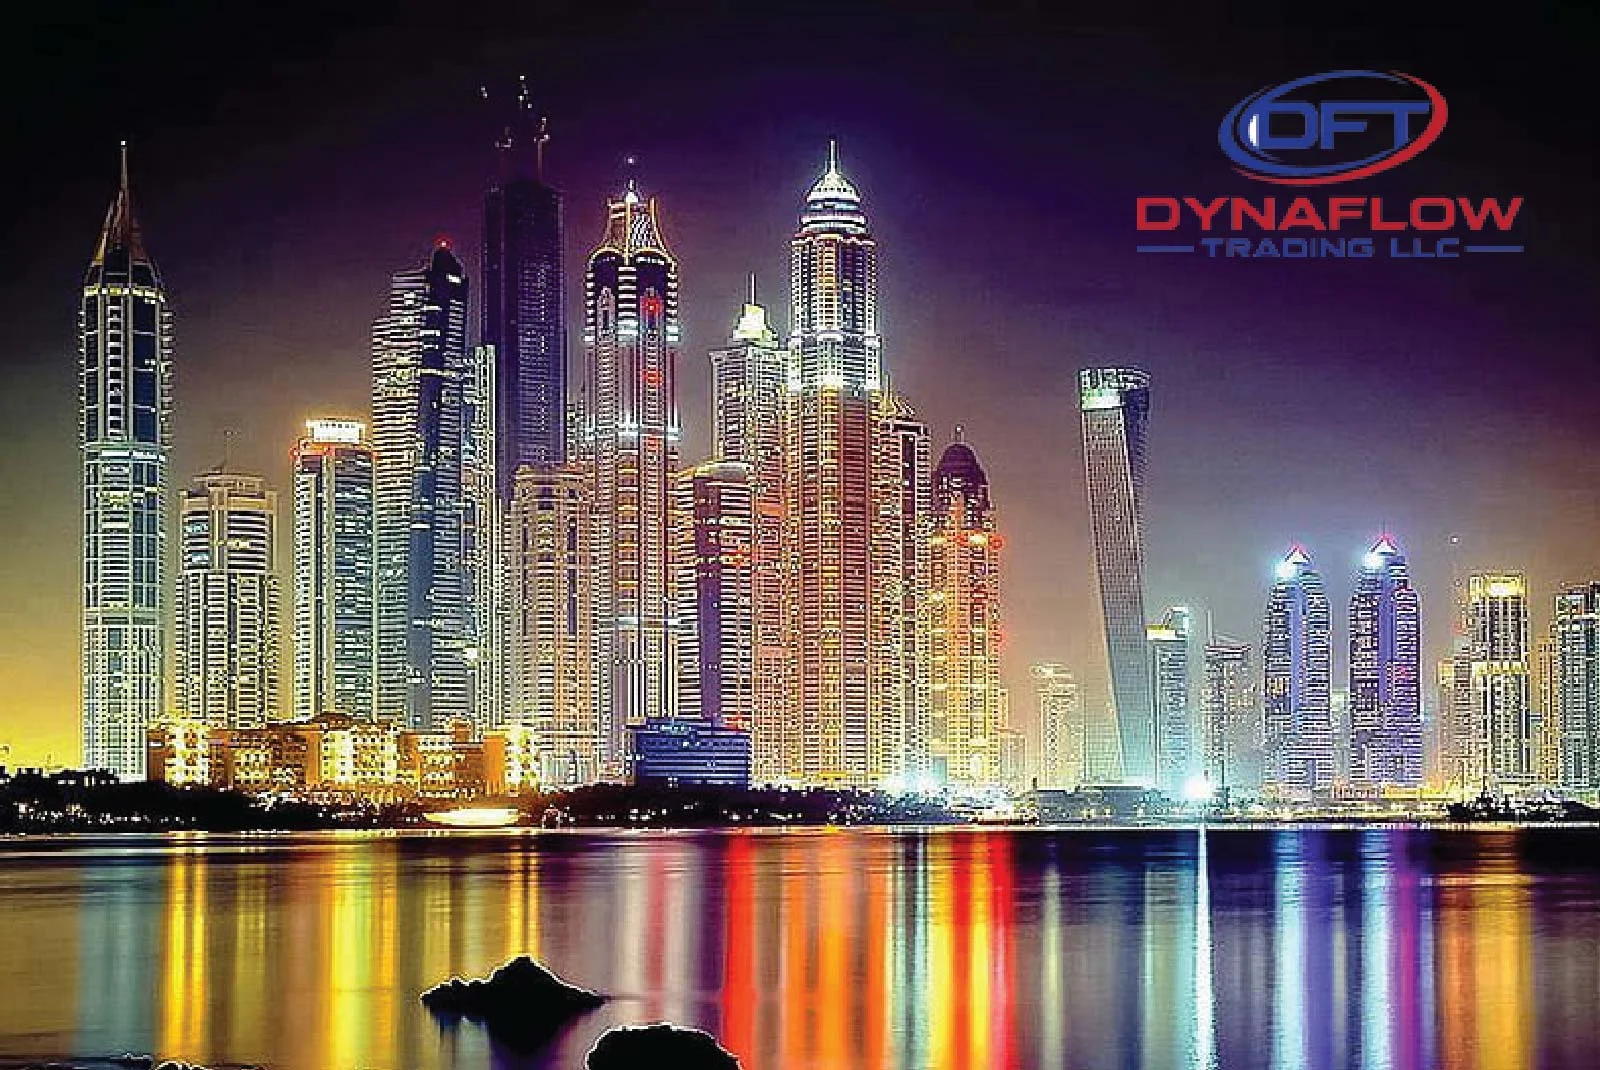 Dynaflow Trading LLC